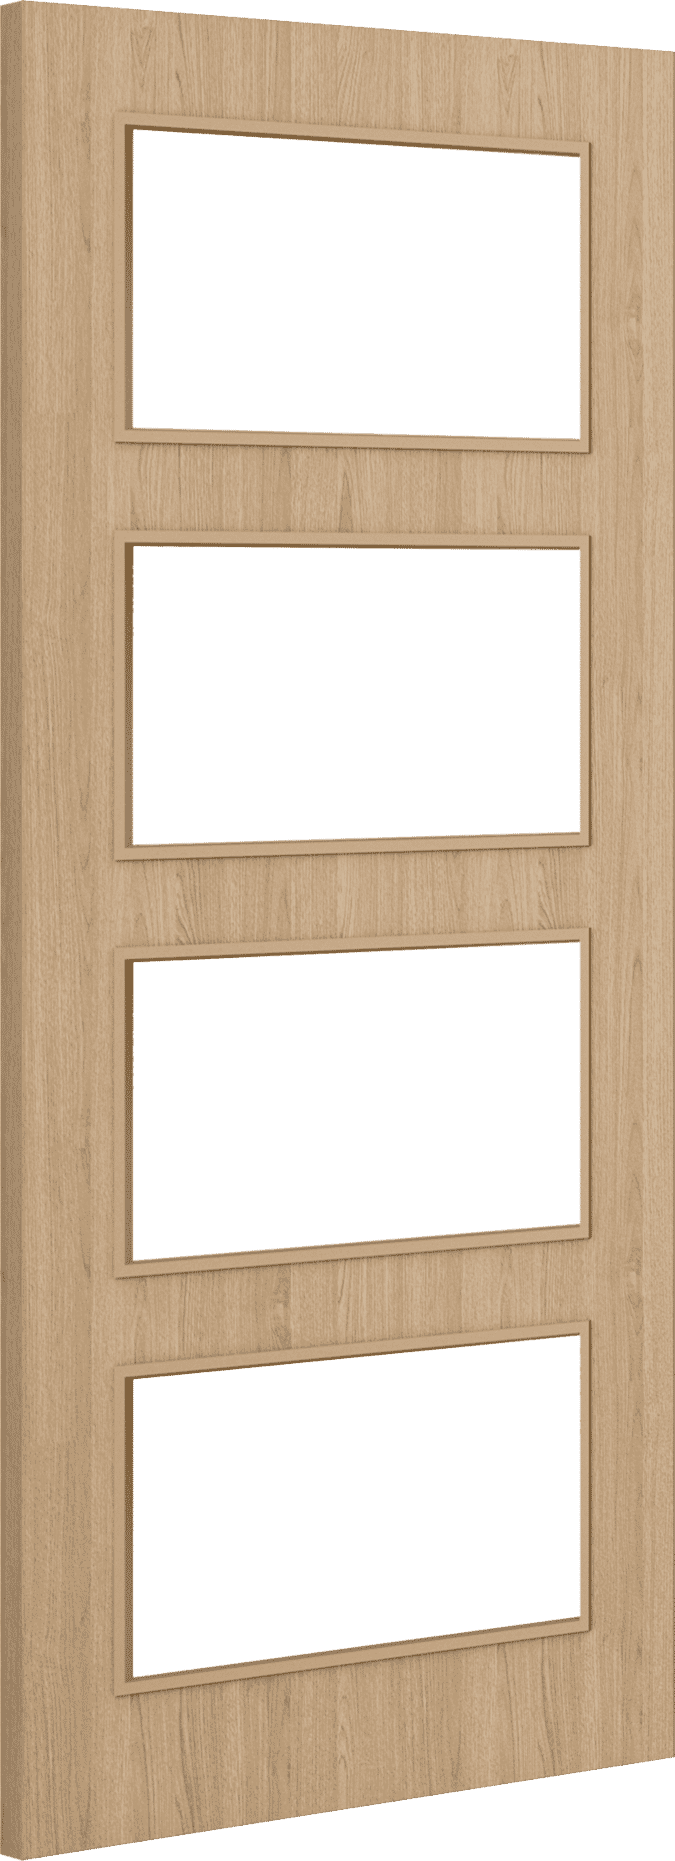 1981mm x 533mm x 44mm (21") Architectural Oak 04 Clear Glazed - Prefinished FD30 Fire Door Blank